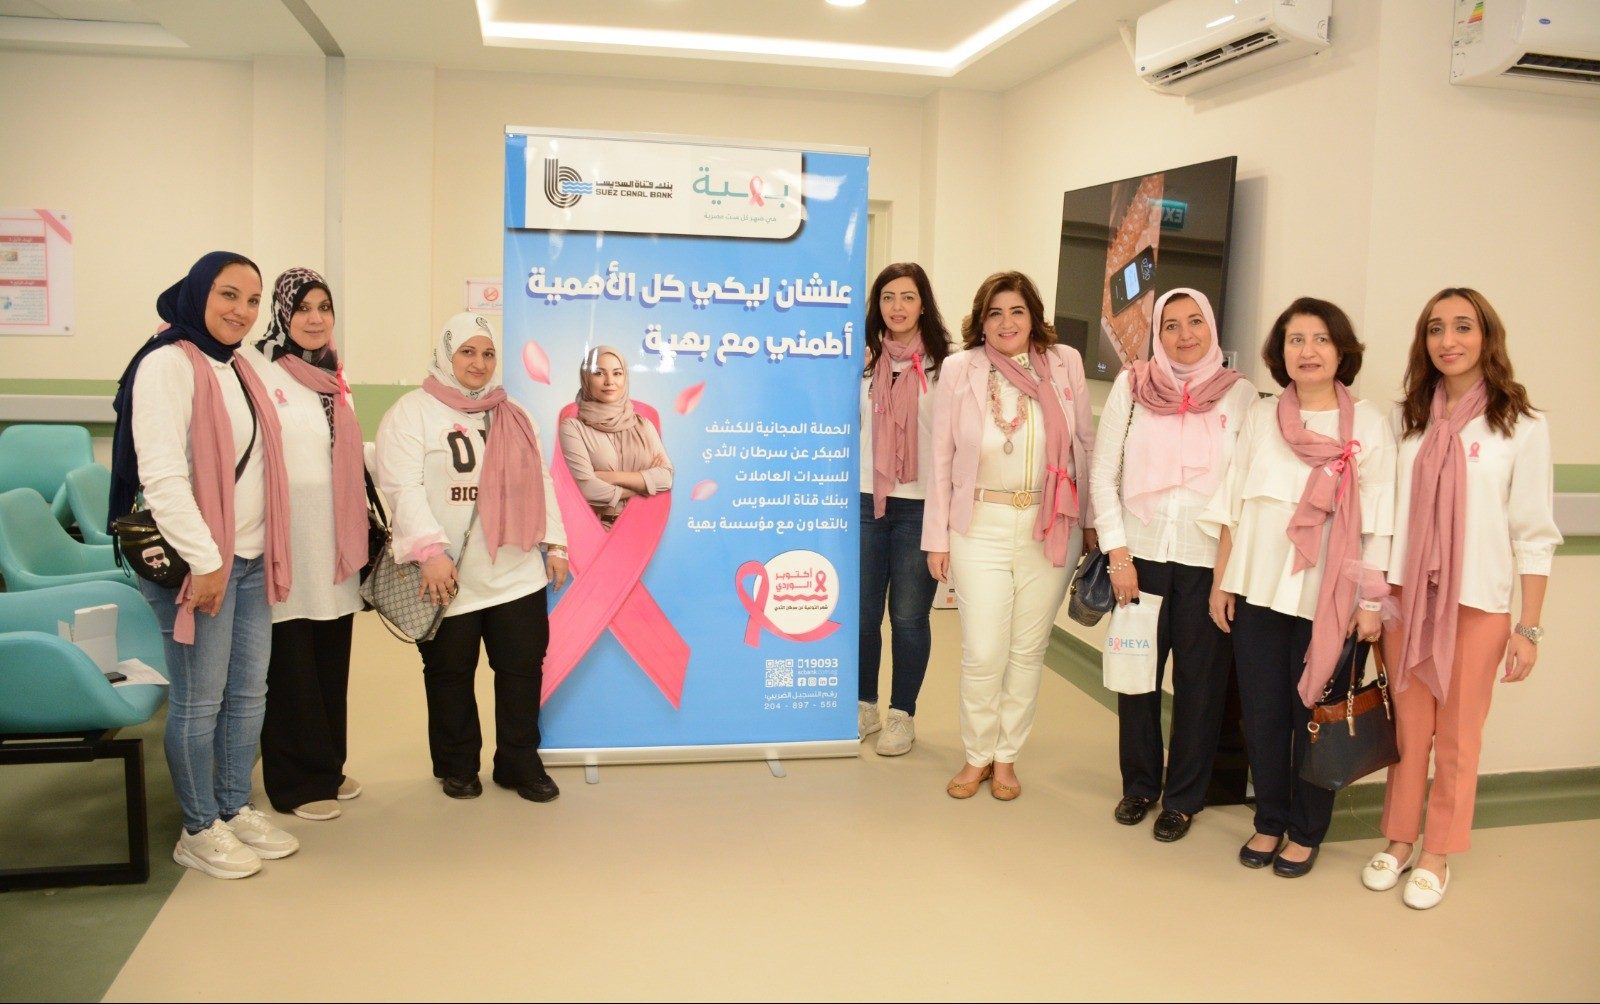 بنك قناة السويس يدعم السيدات العاملات للكشف المبكر عن مرض سرطان الثدي بالتعاون مع مؤسسة بهية «صور»